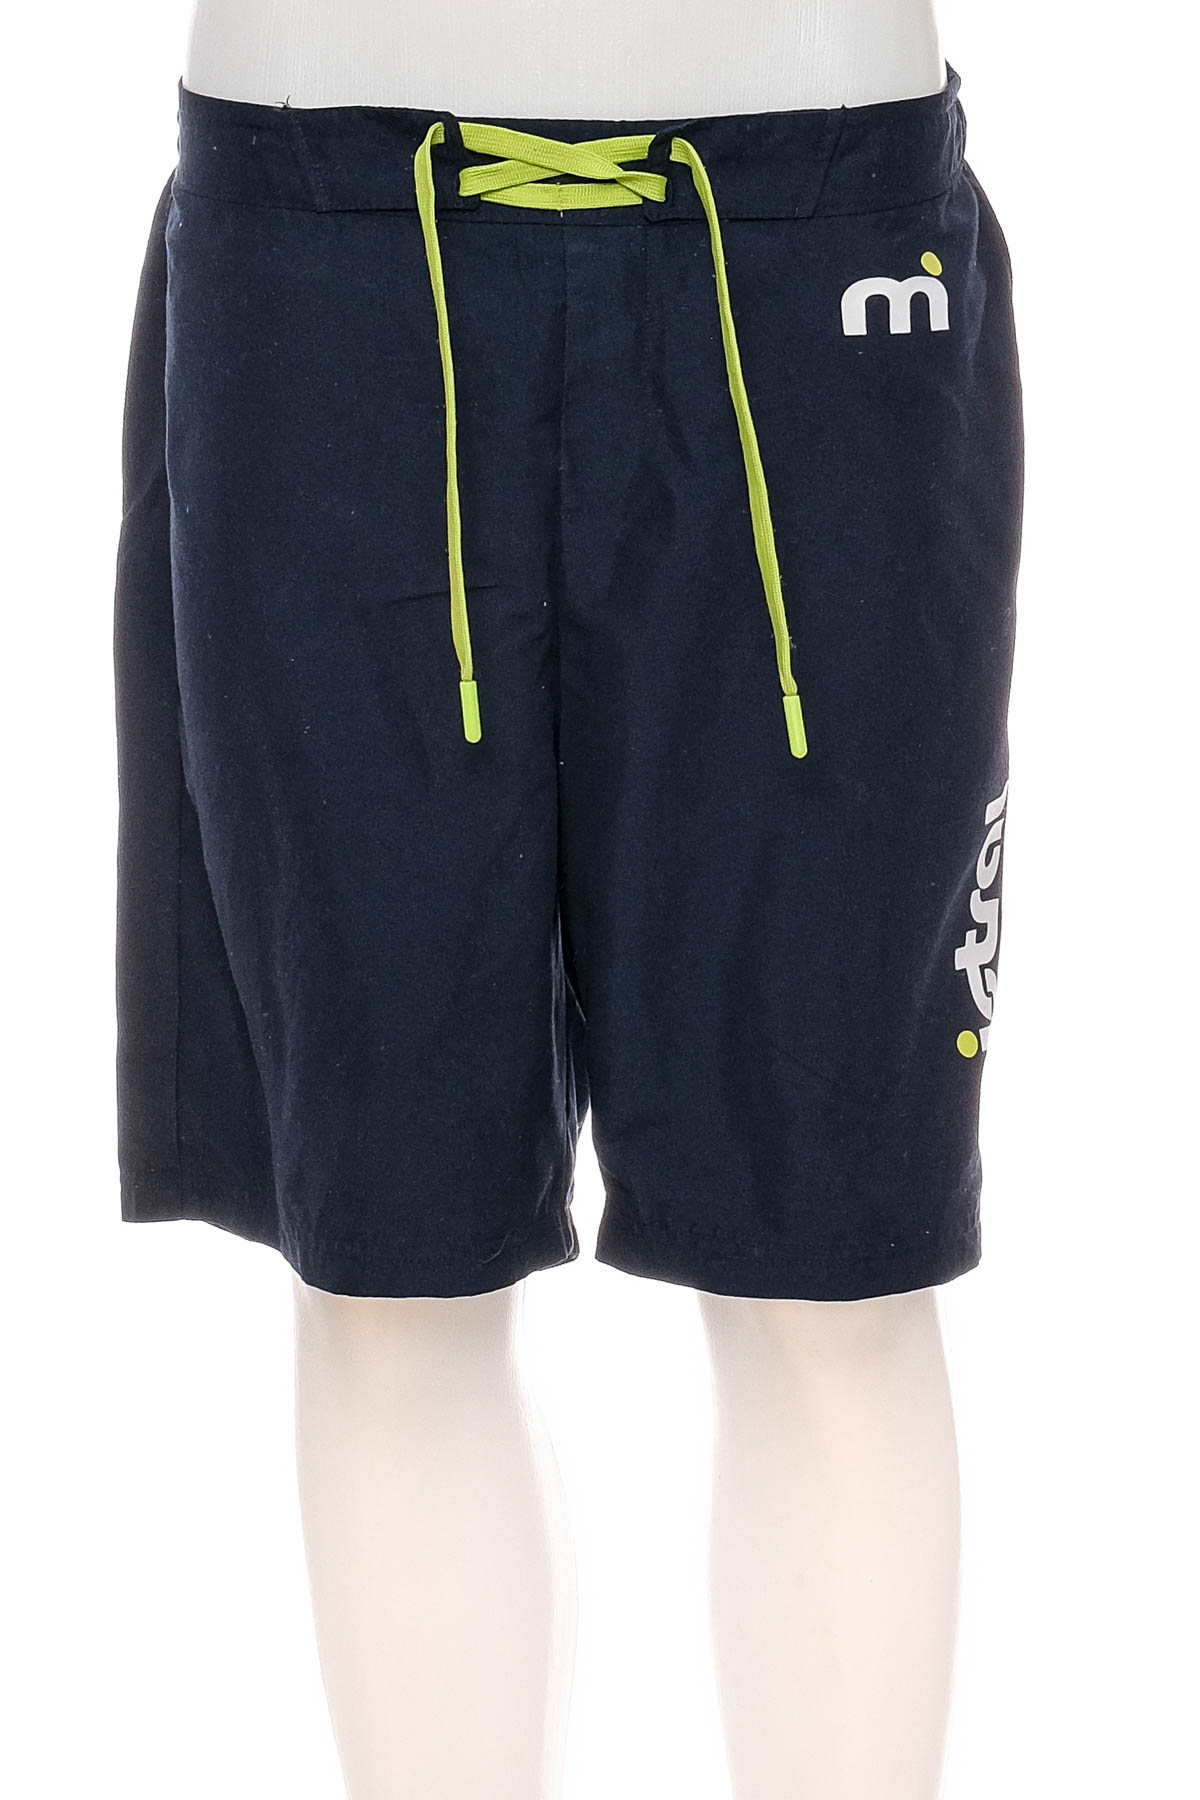 Men's shorts - Mistral - 0